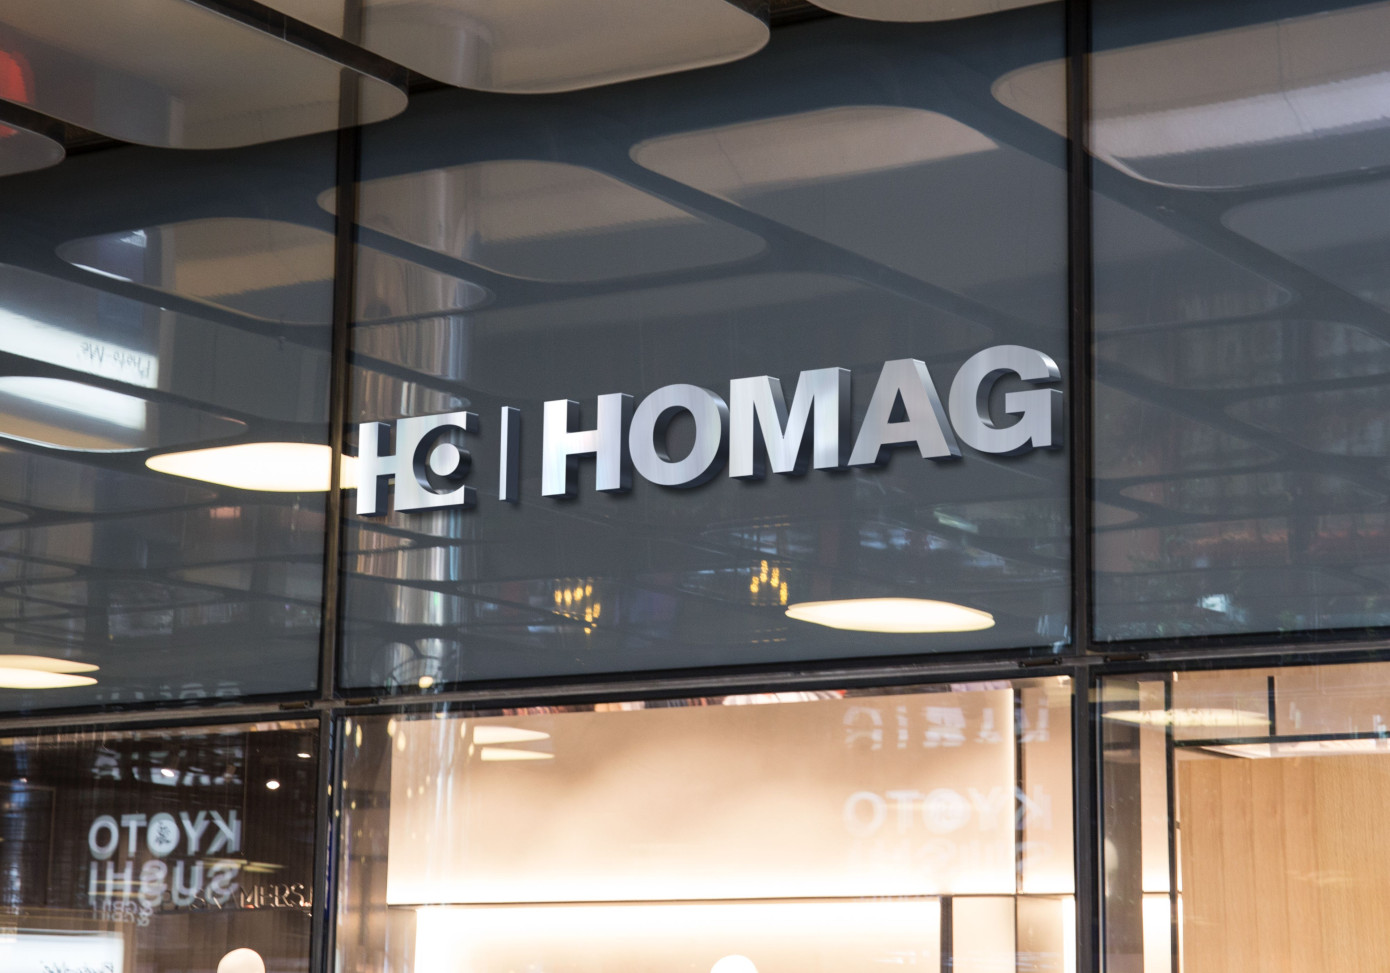 Homag Group’s Q1 sales decreased by 14%